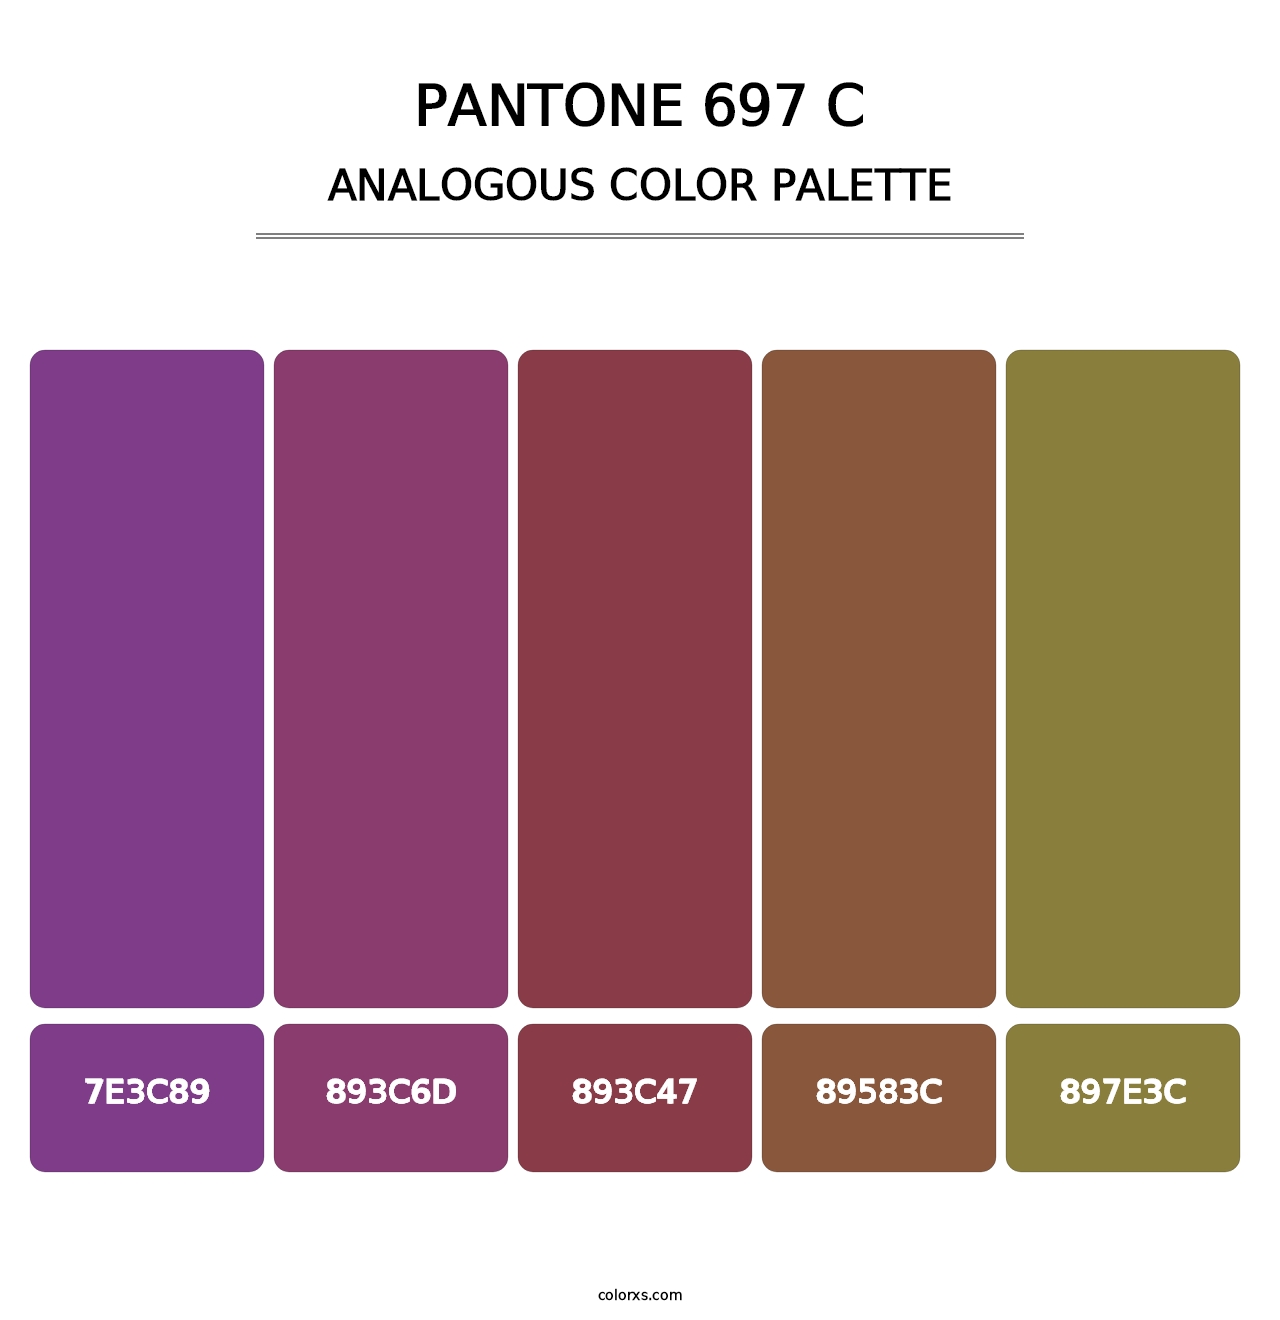 PANTONE 697 C - Analogous Color Palette